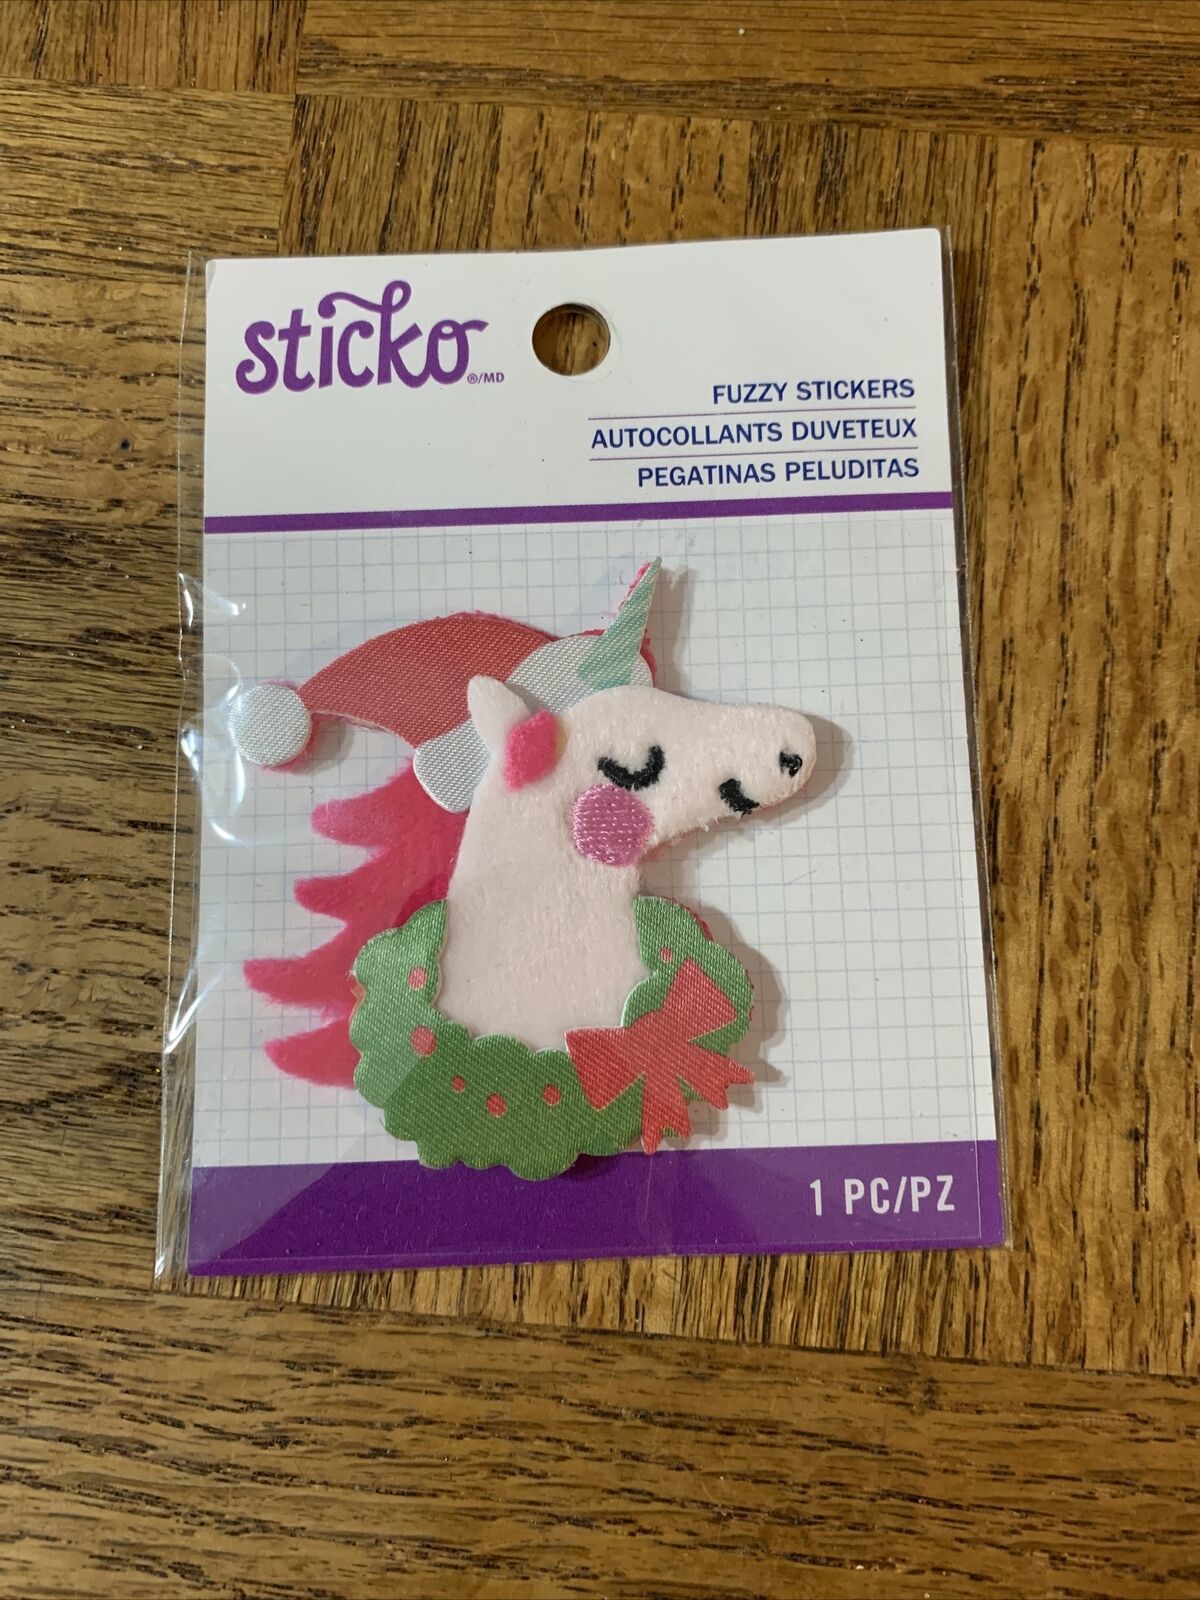 Sticko Fuzzy Stickers Unicorn